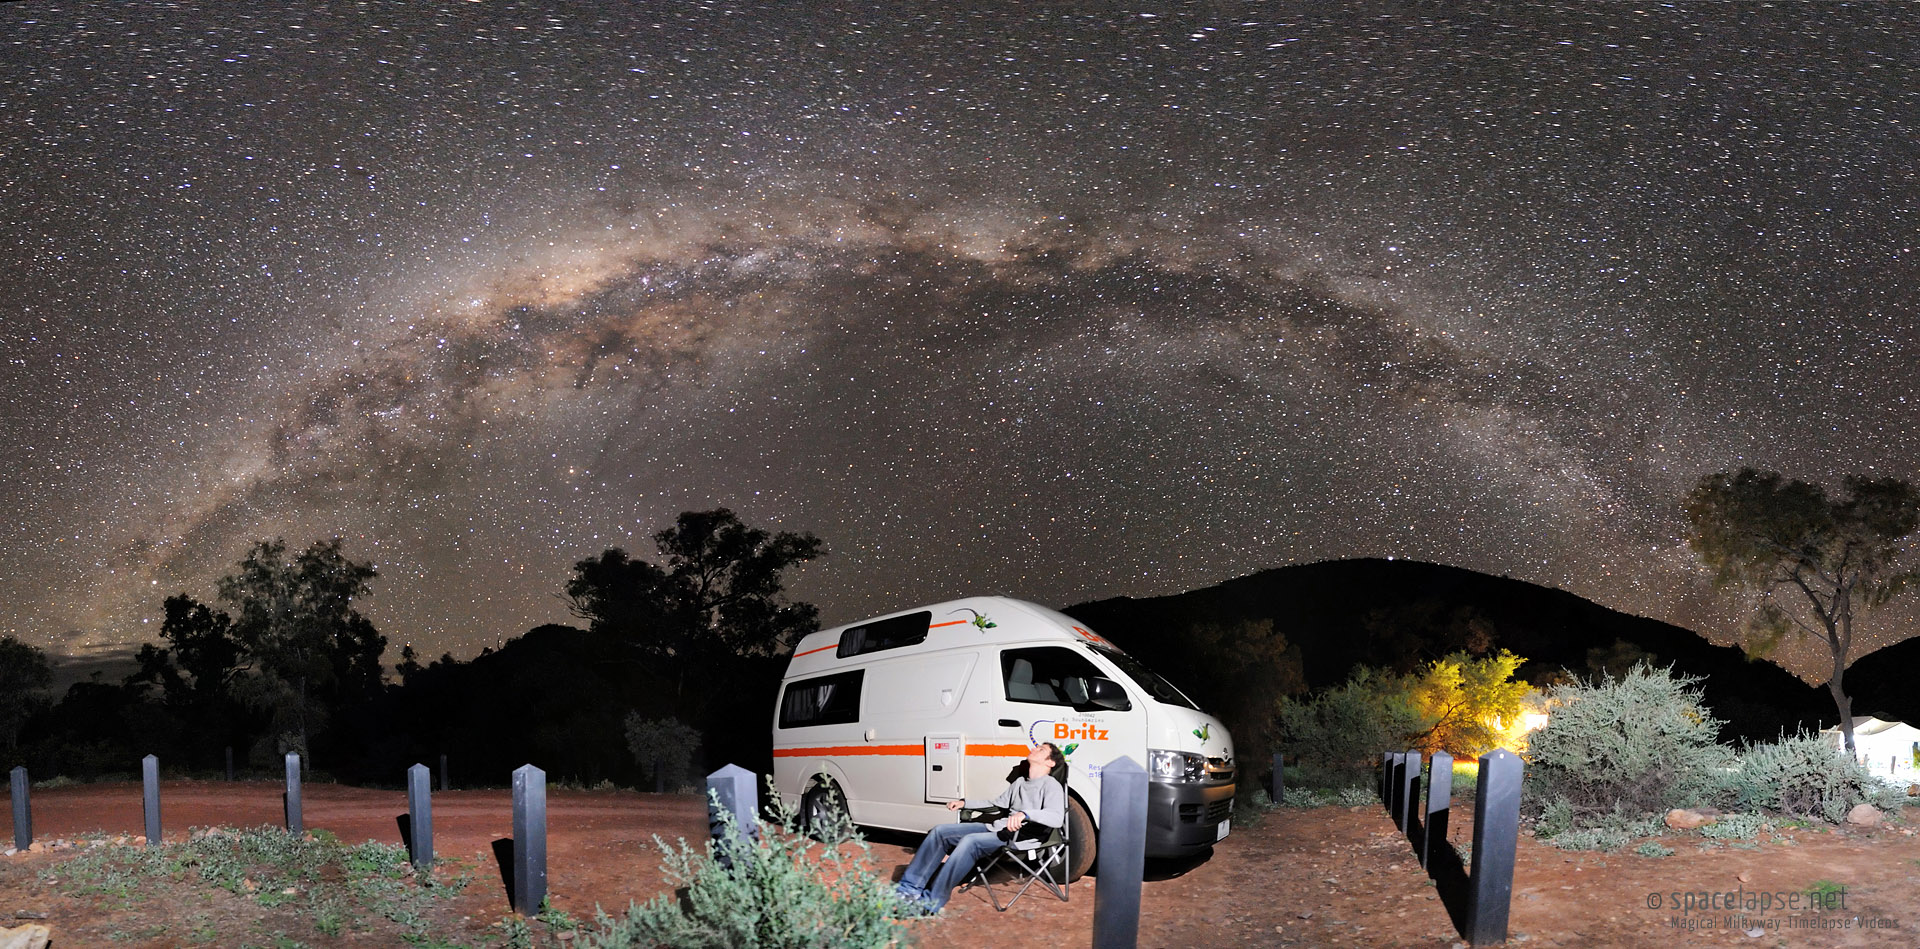 Campen unter der Milchstraße - Ich genieße einen der schönsten Sternenhimmel der Welt